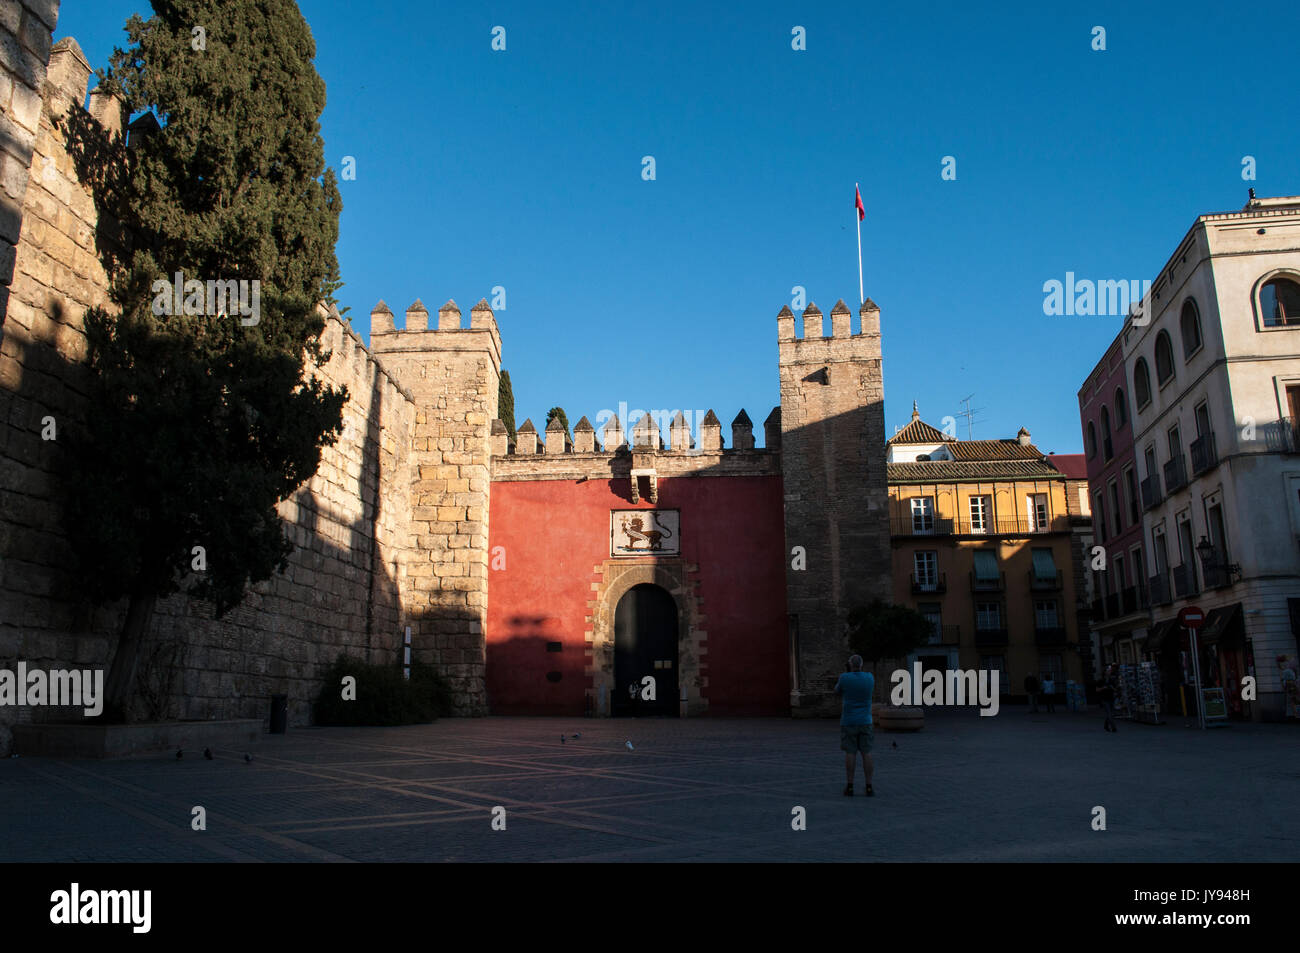 Espagne : la façade de l'Alcazar de Séville, le palais royal développé par les rois musulmans mauresque, remarquable exemple de l'architecture mudéjar Banque D'Images